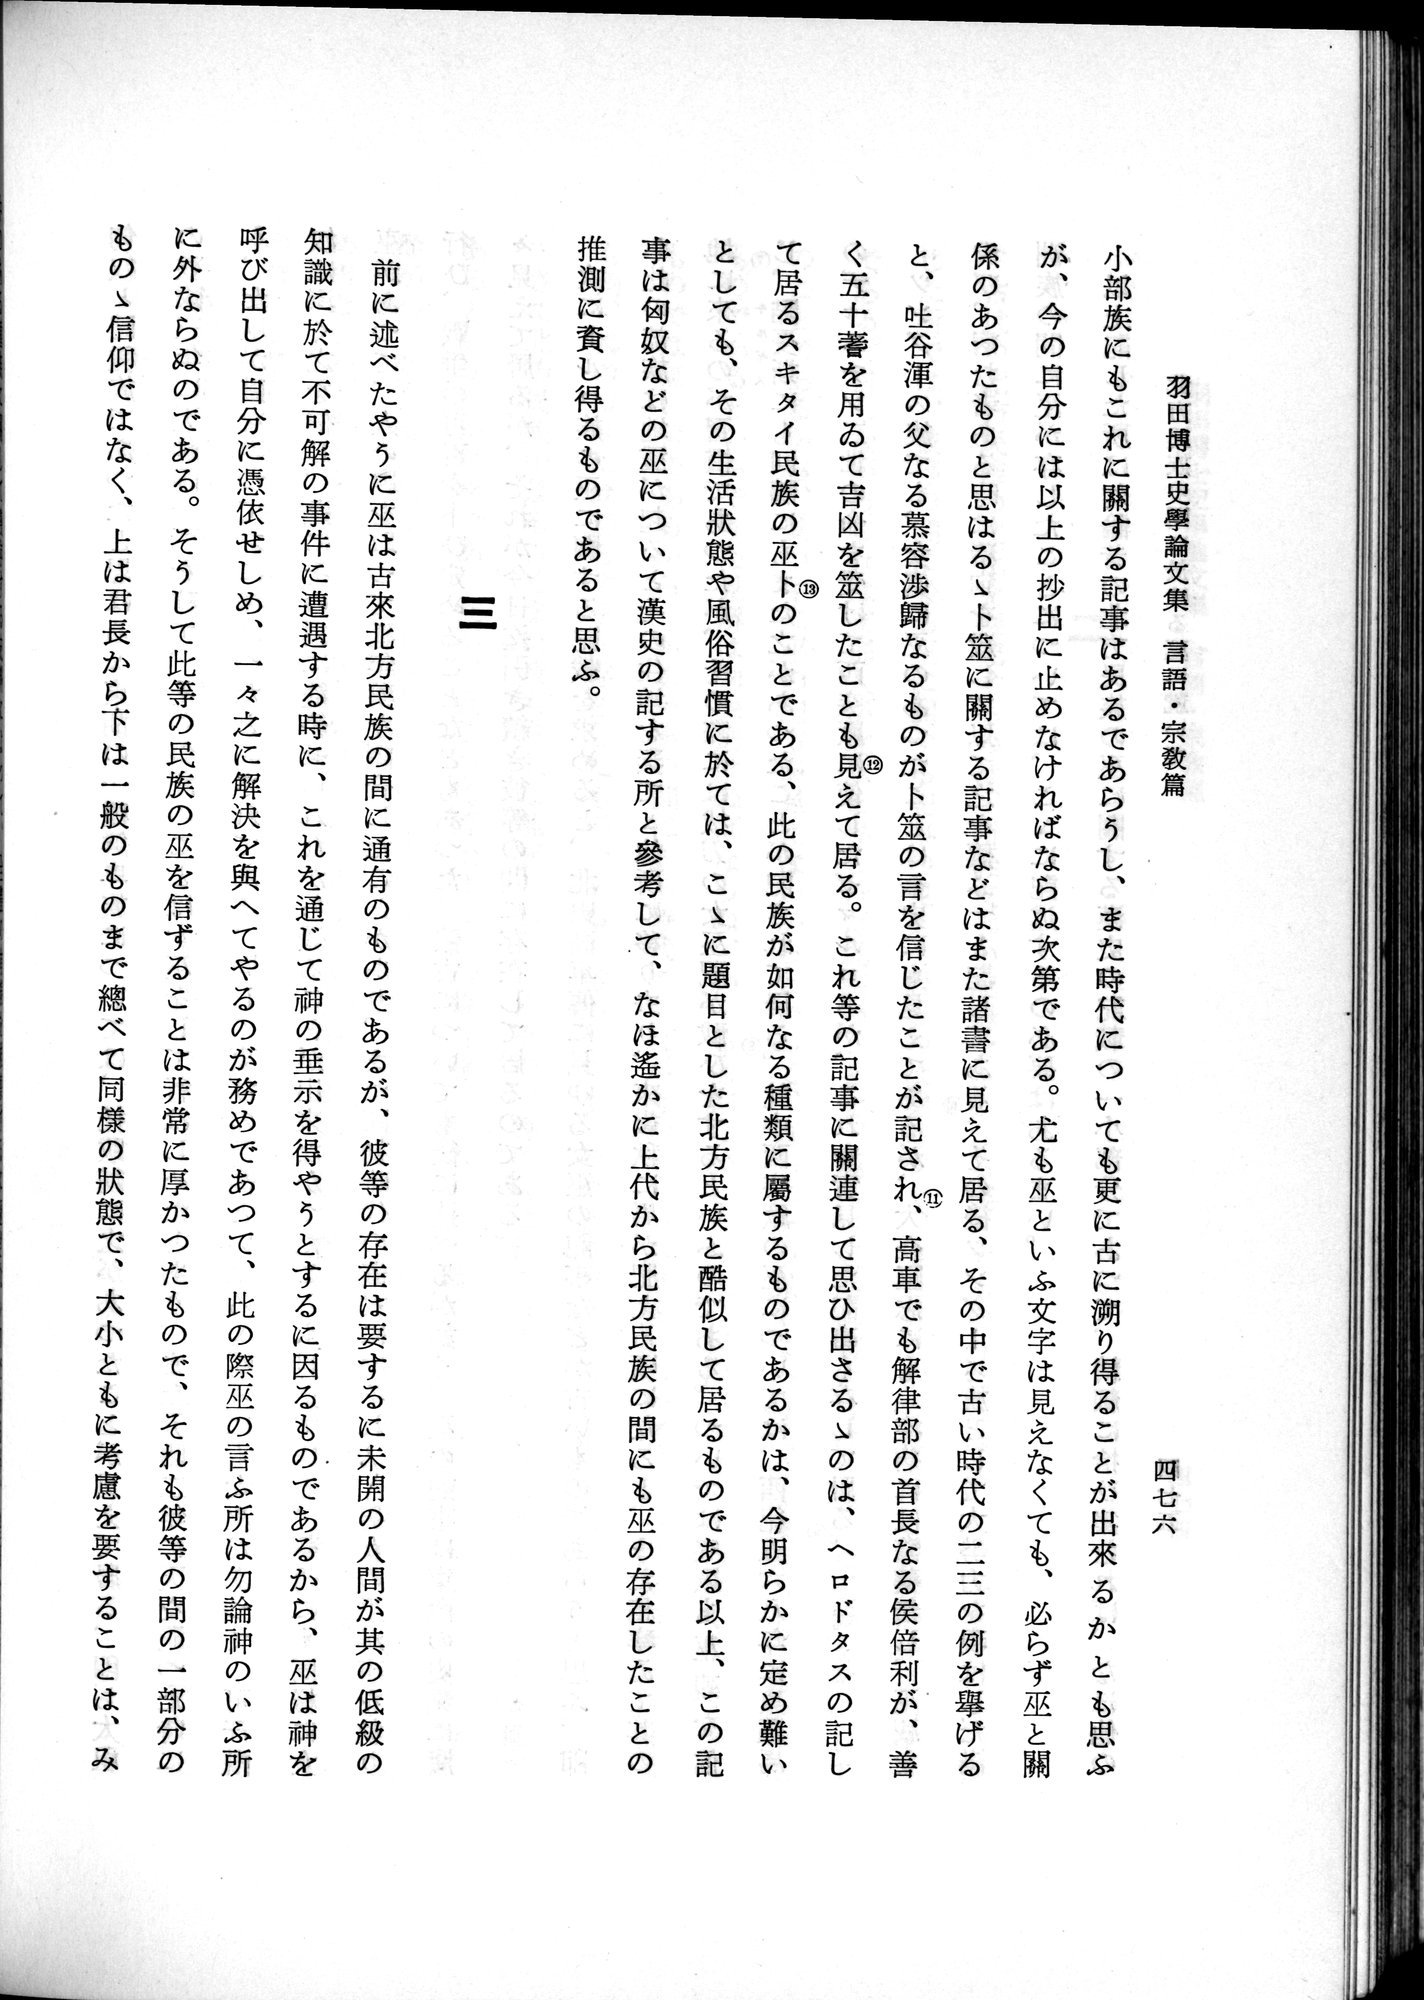 羽田博士史学論文集 : vol.2 / 538 ページ（白黒高解像度画像）